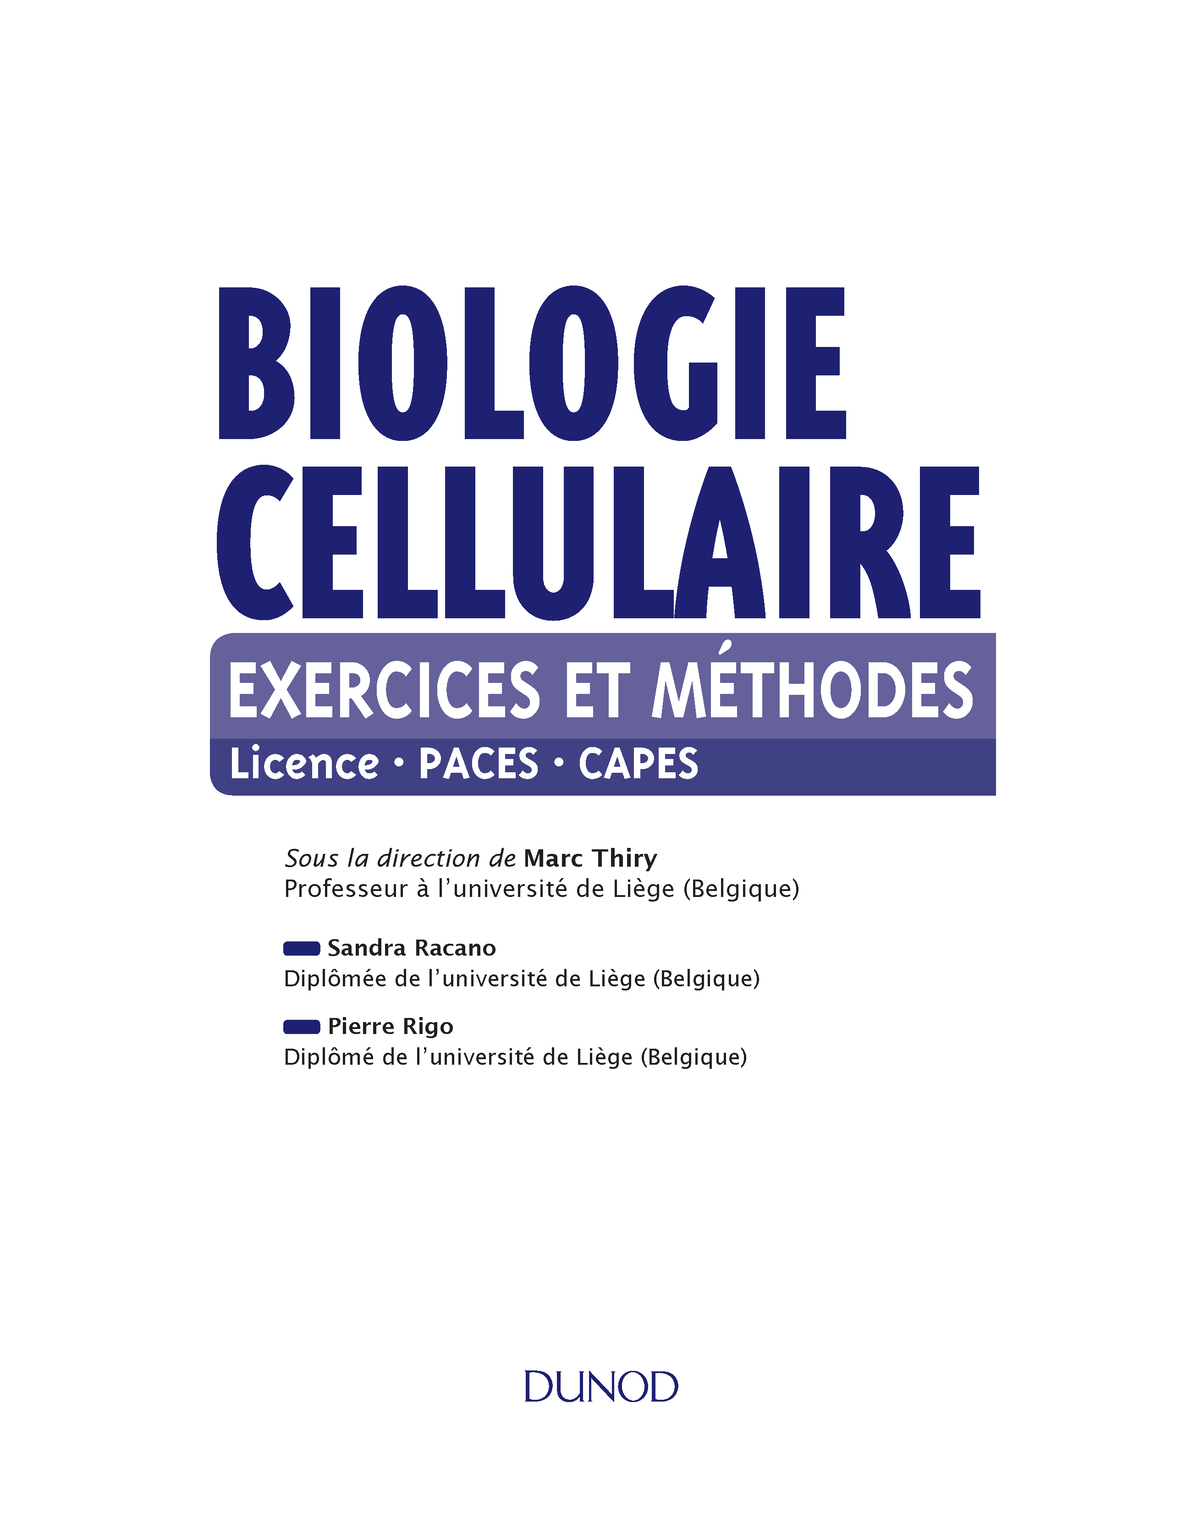 Extrait du livre - Biologie cellulaire - BIOLOGIE CELLULAIRE EXERCICES ...